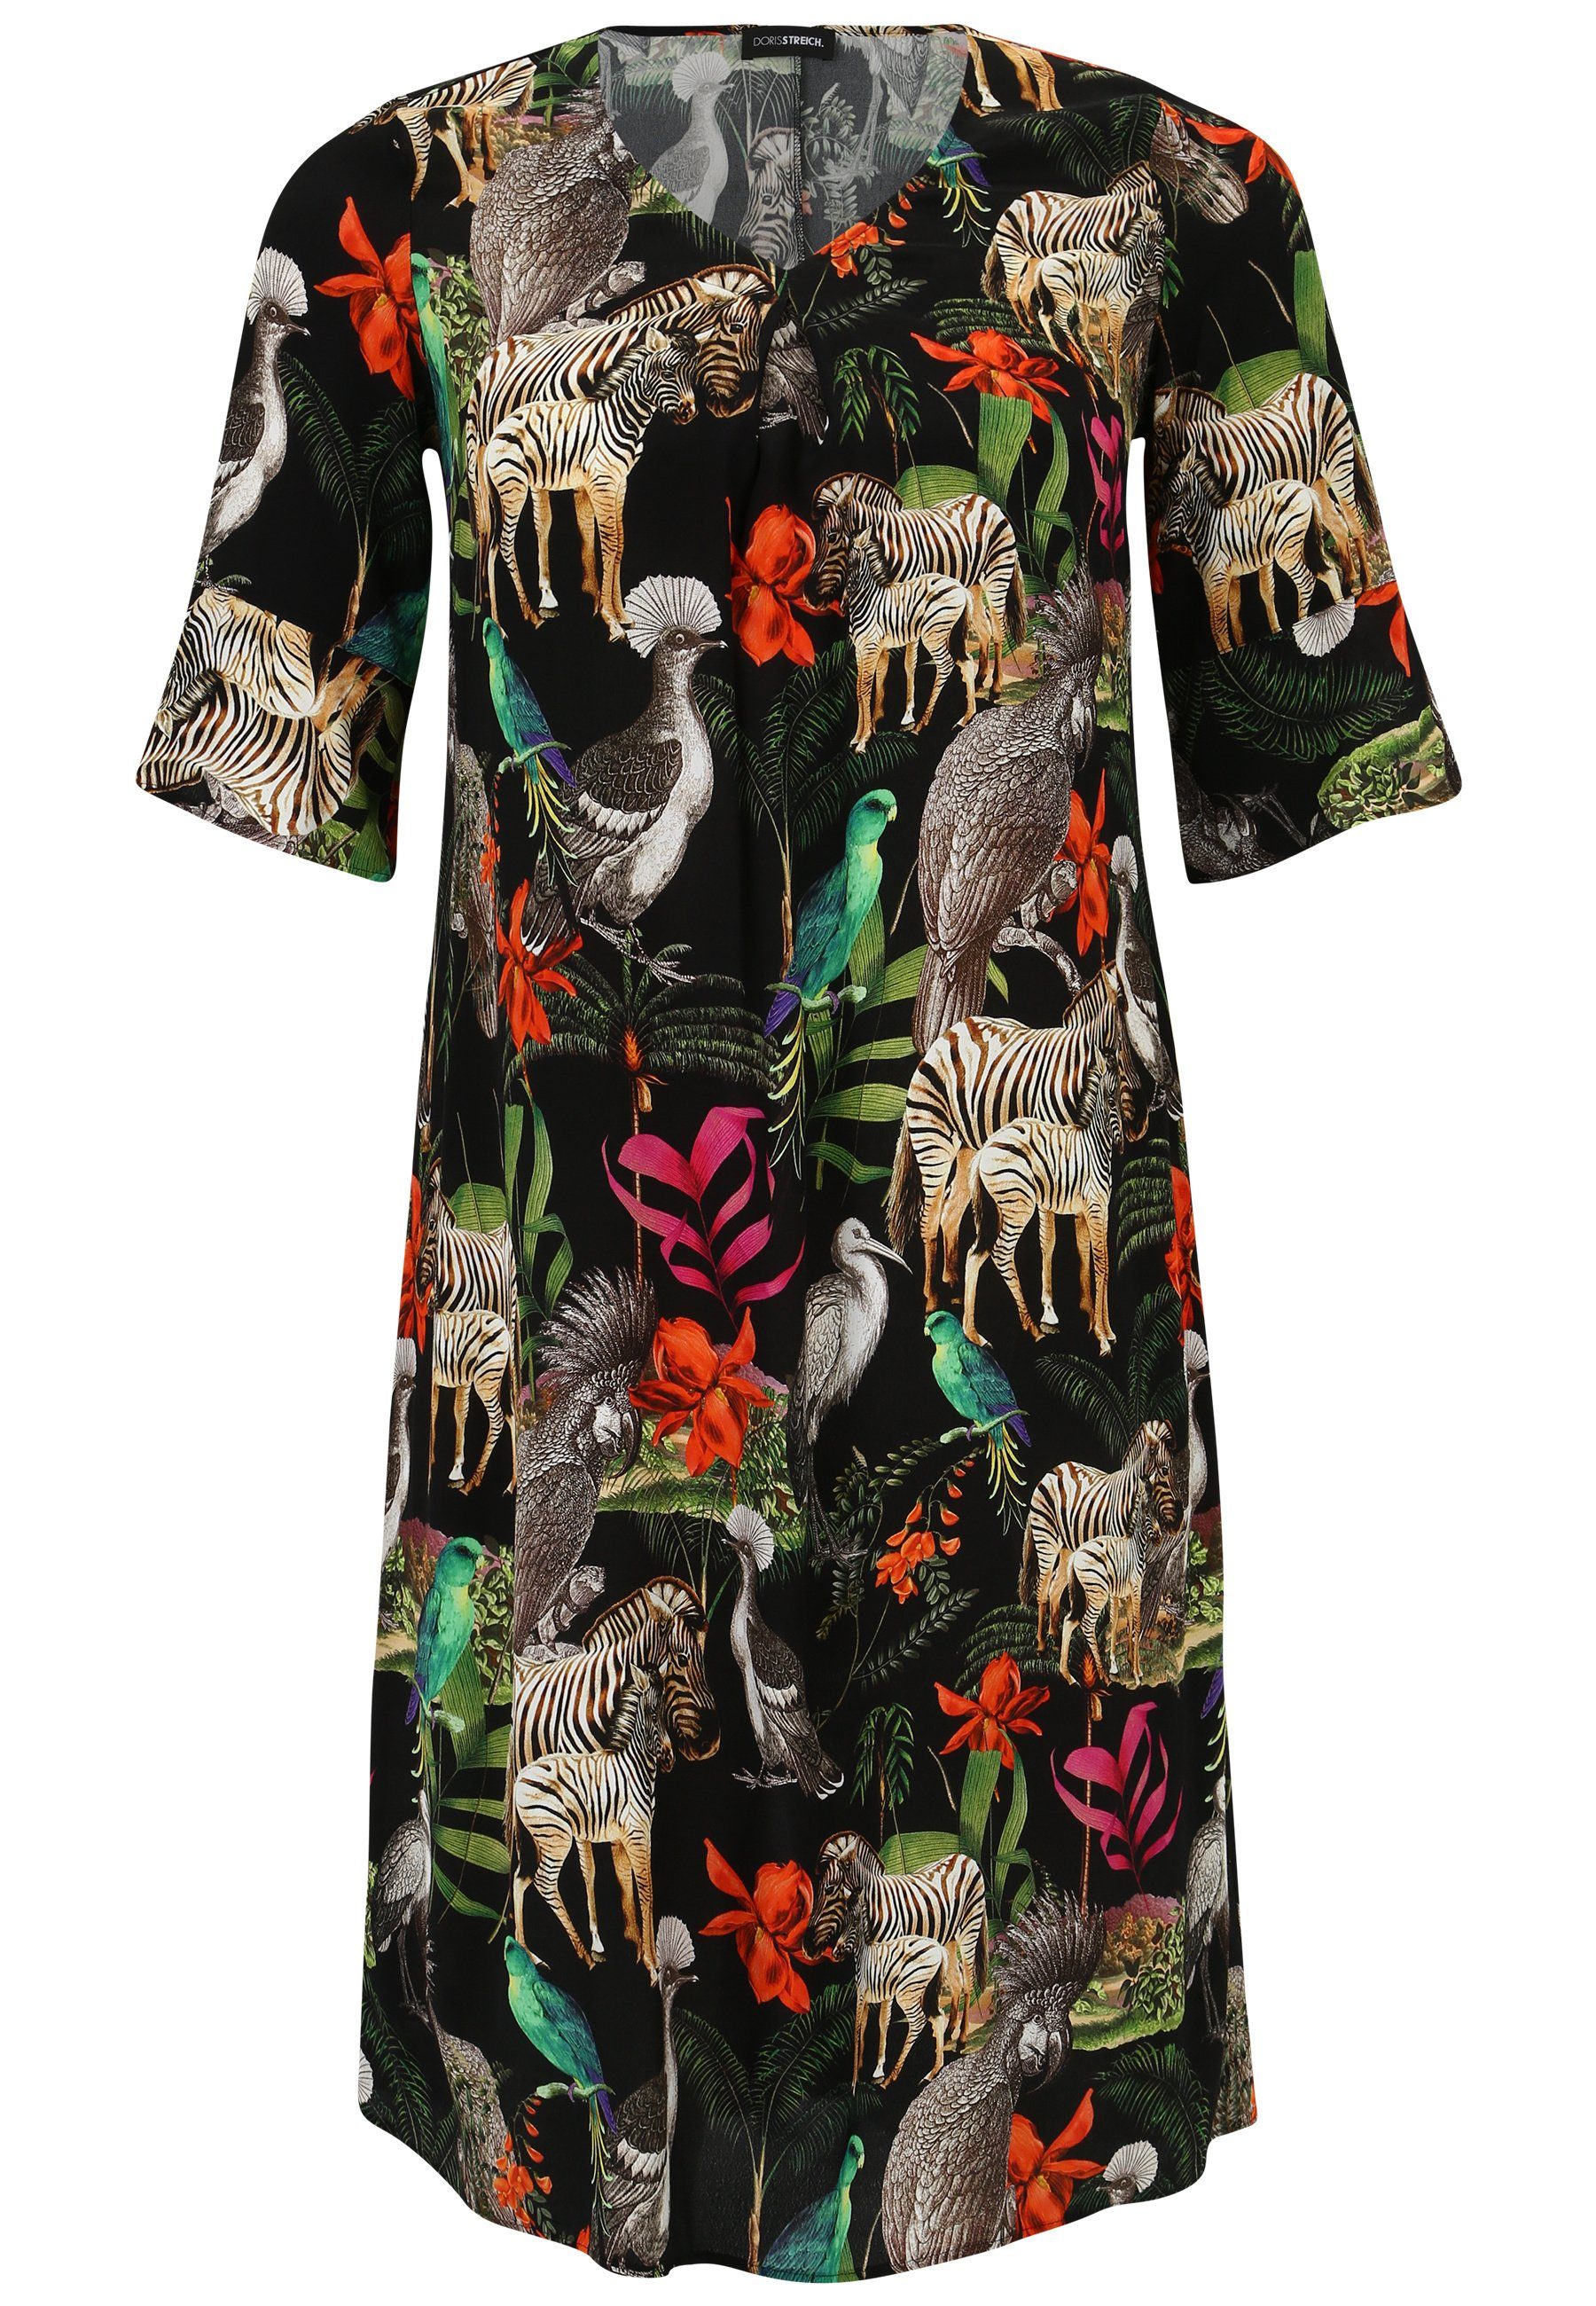 Doris Streich Sommerkleid mit exotischem Tier-Print mit modernem Design